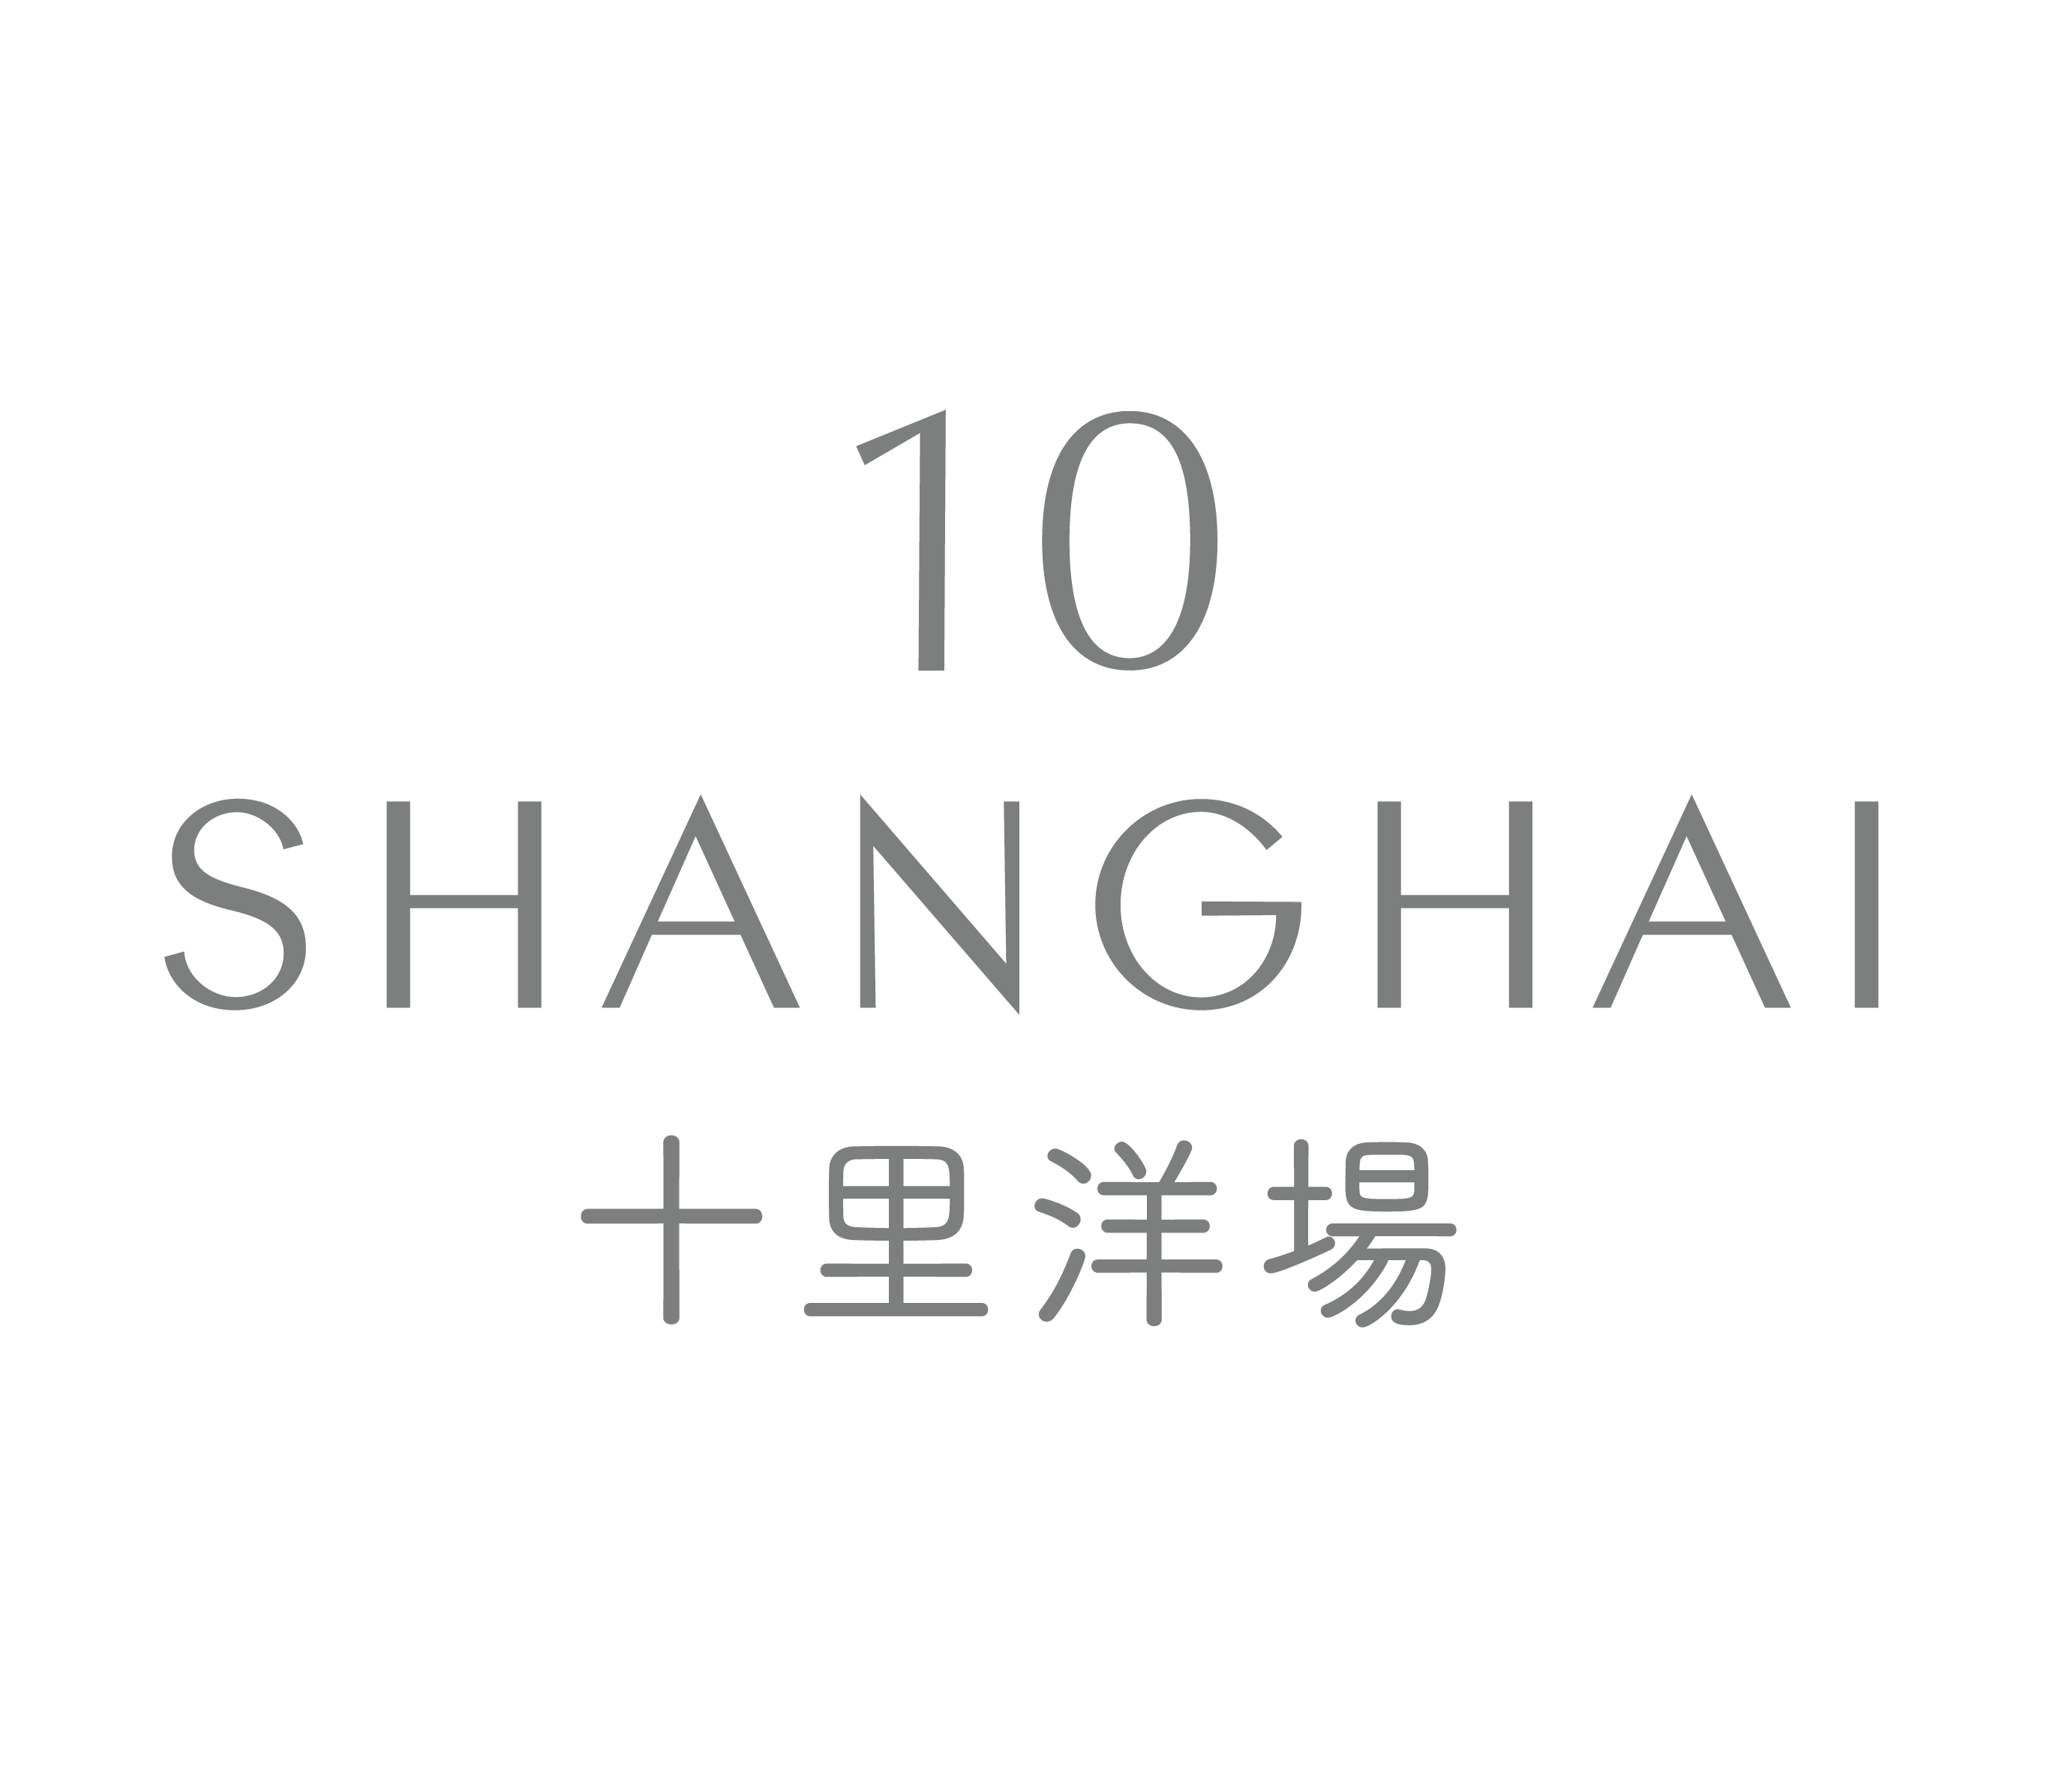 10 Shanghai